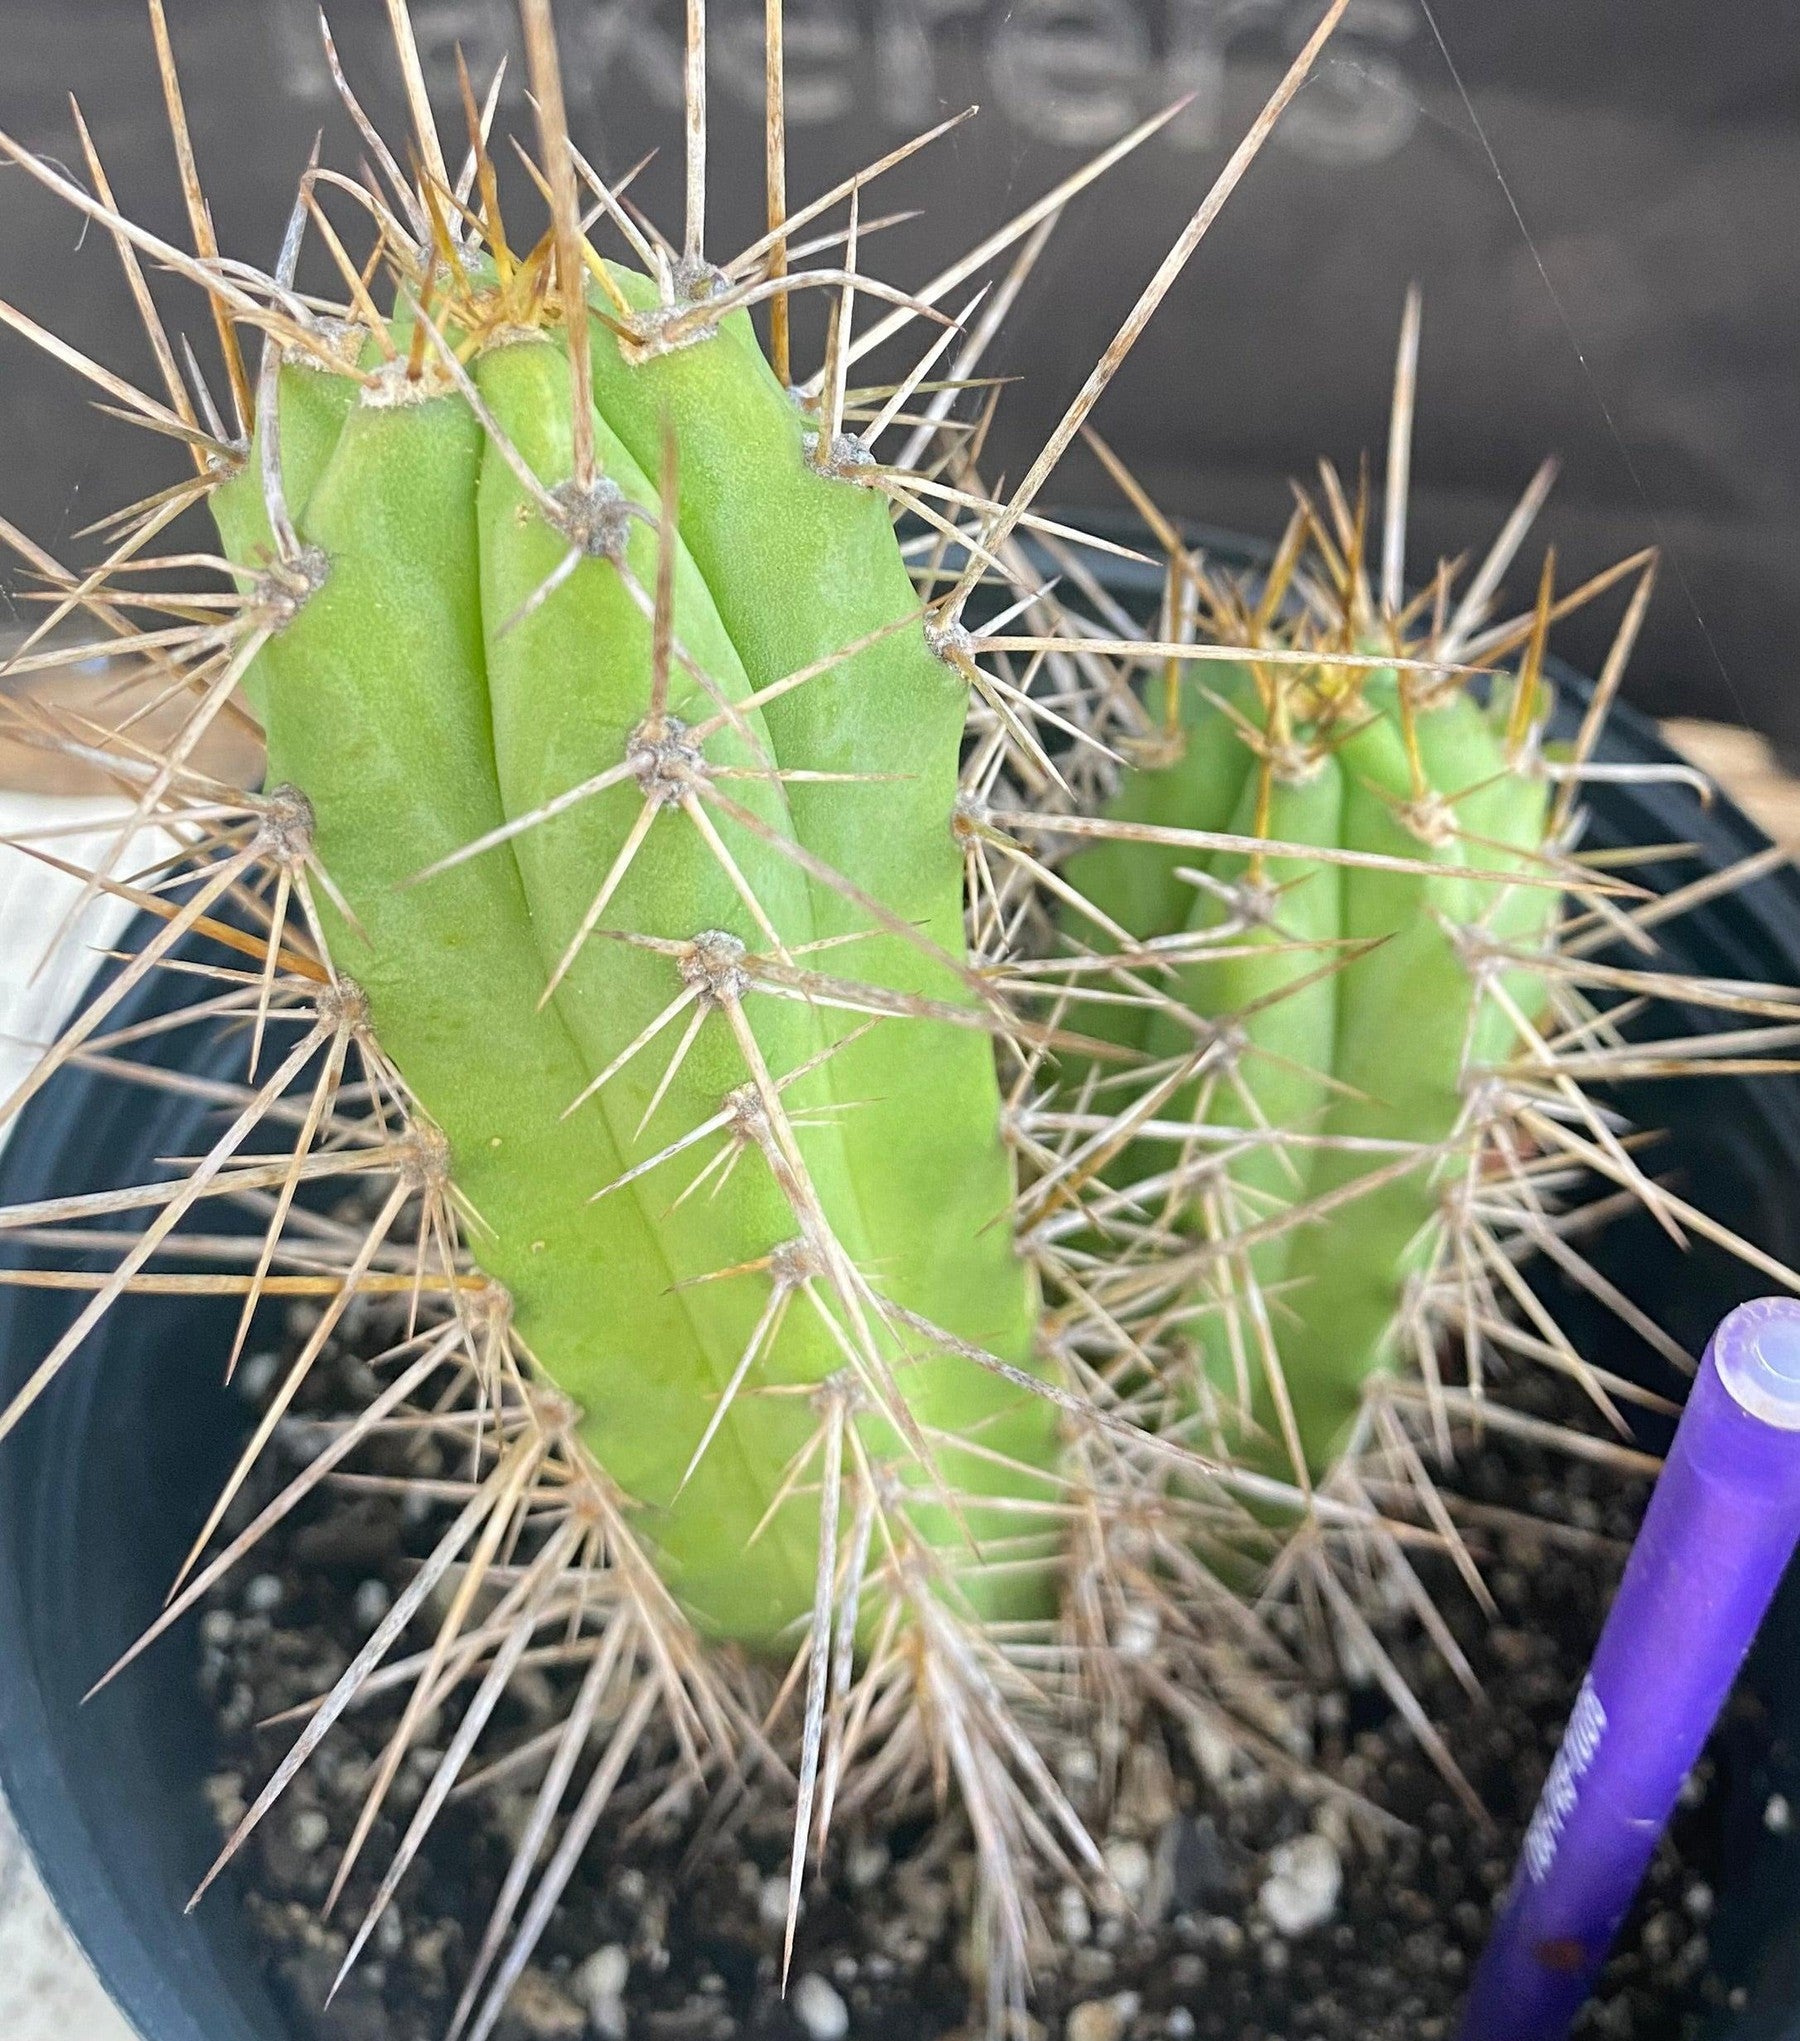 #EC234 EXACT Trichocereus Pachanoi Ornamental Cactus Cutting 6.5”-Cactus - Large - Exact-The Succulent Source